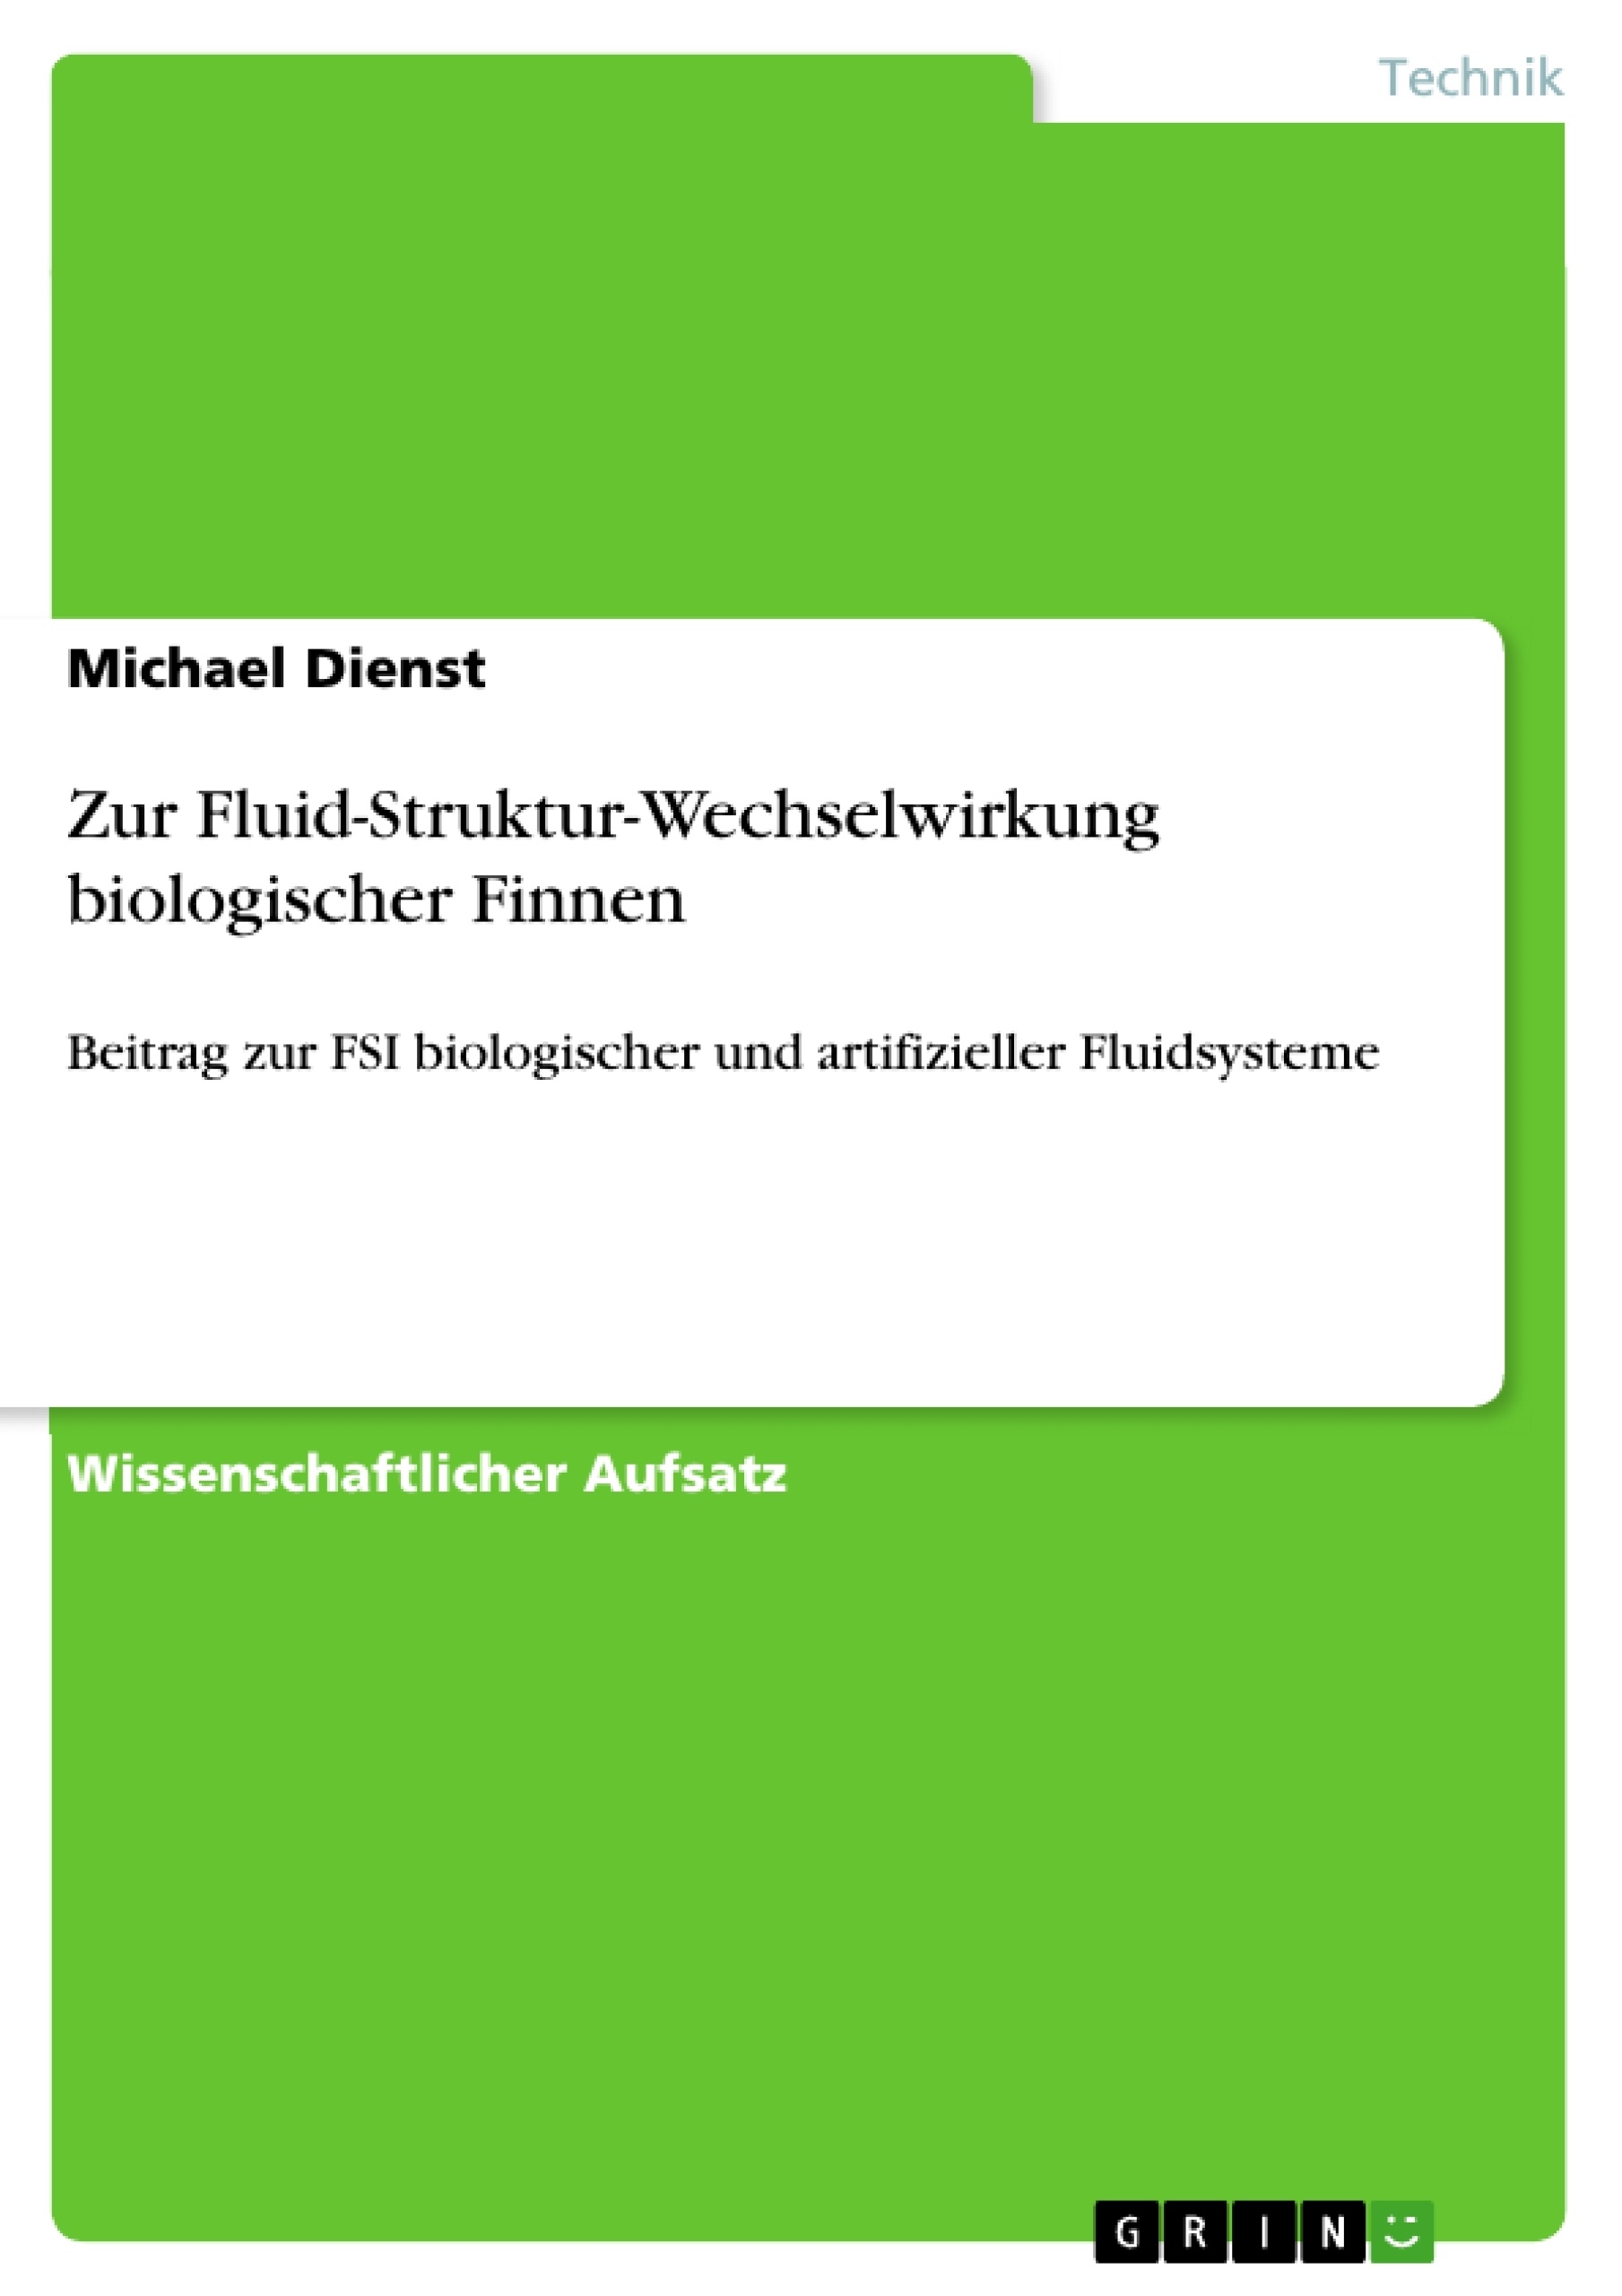 Título: Zur Fluid-Struktur-Wechselwirkung biologischer Finnen